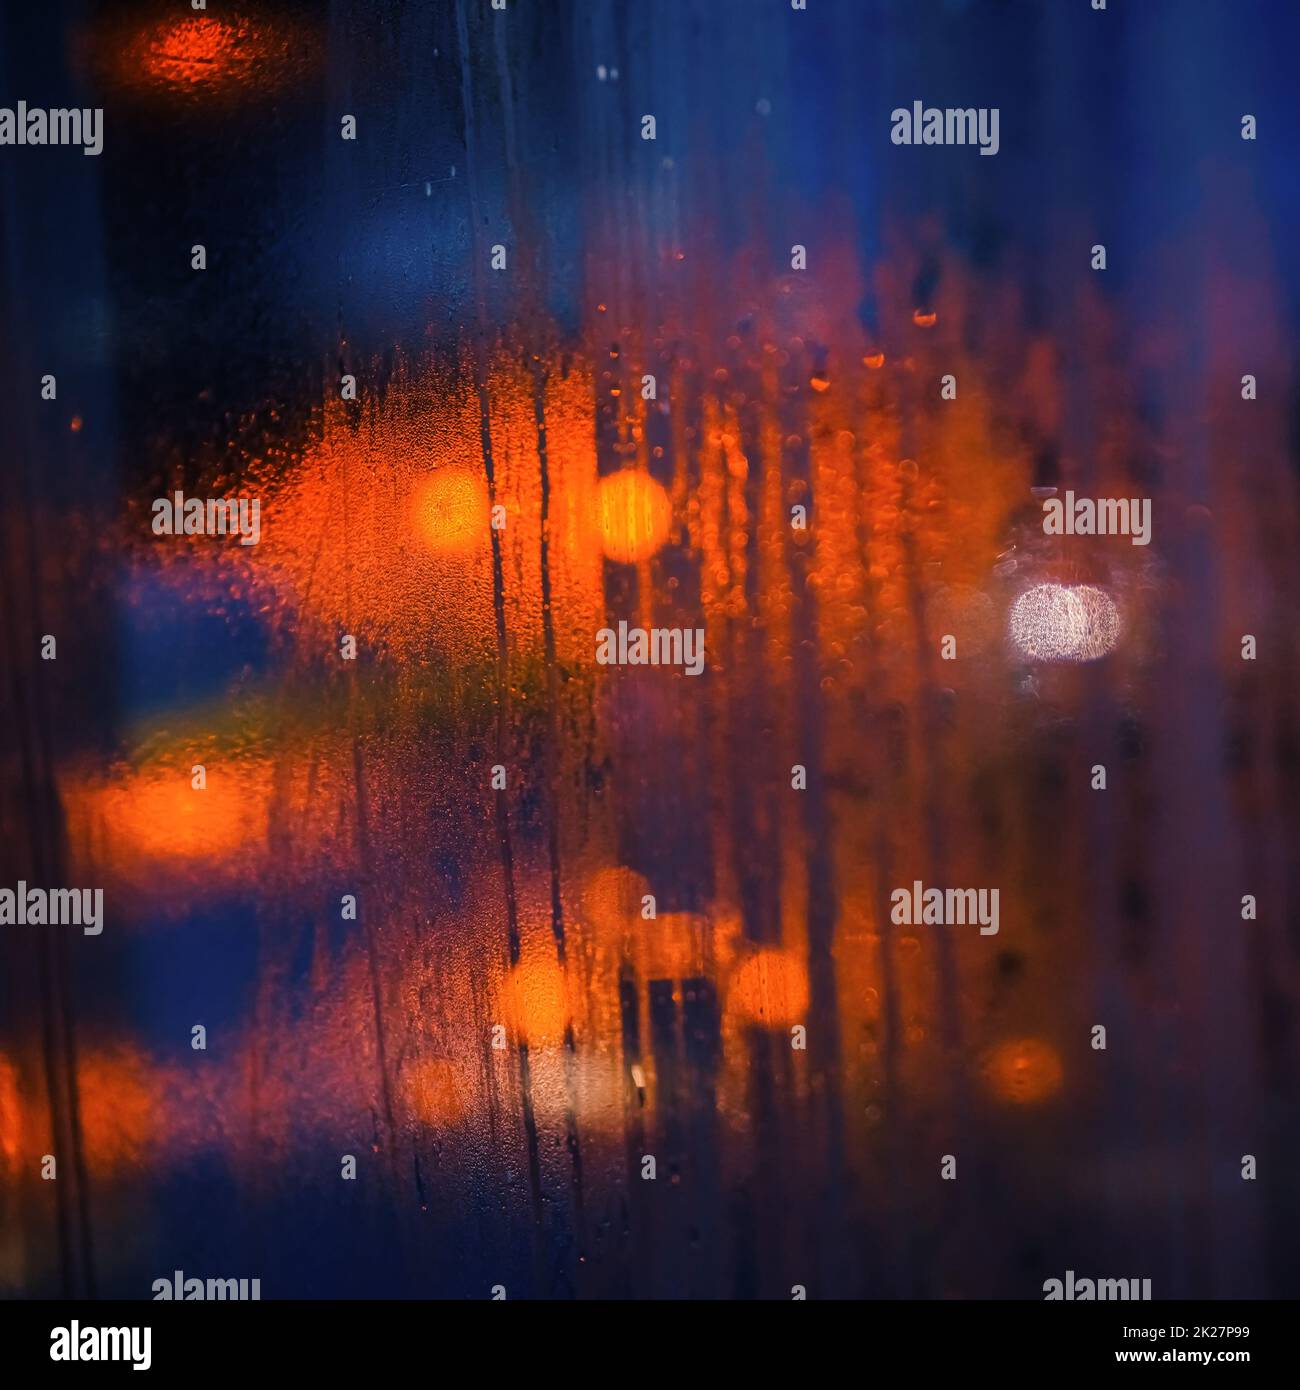 Feuchtes, dampfiges Fenster im Bus an einem regnerischen Tag, verschwommenes orangefarbenes und blaues Licht im Hintergrund - abstrakter, launischer Hintergrund Stockfoto